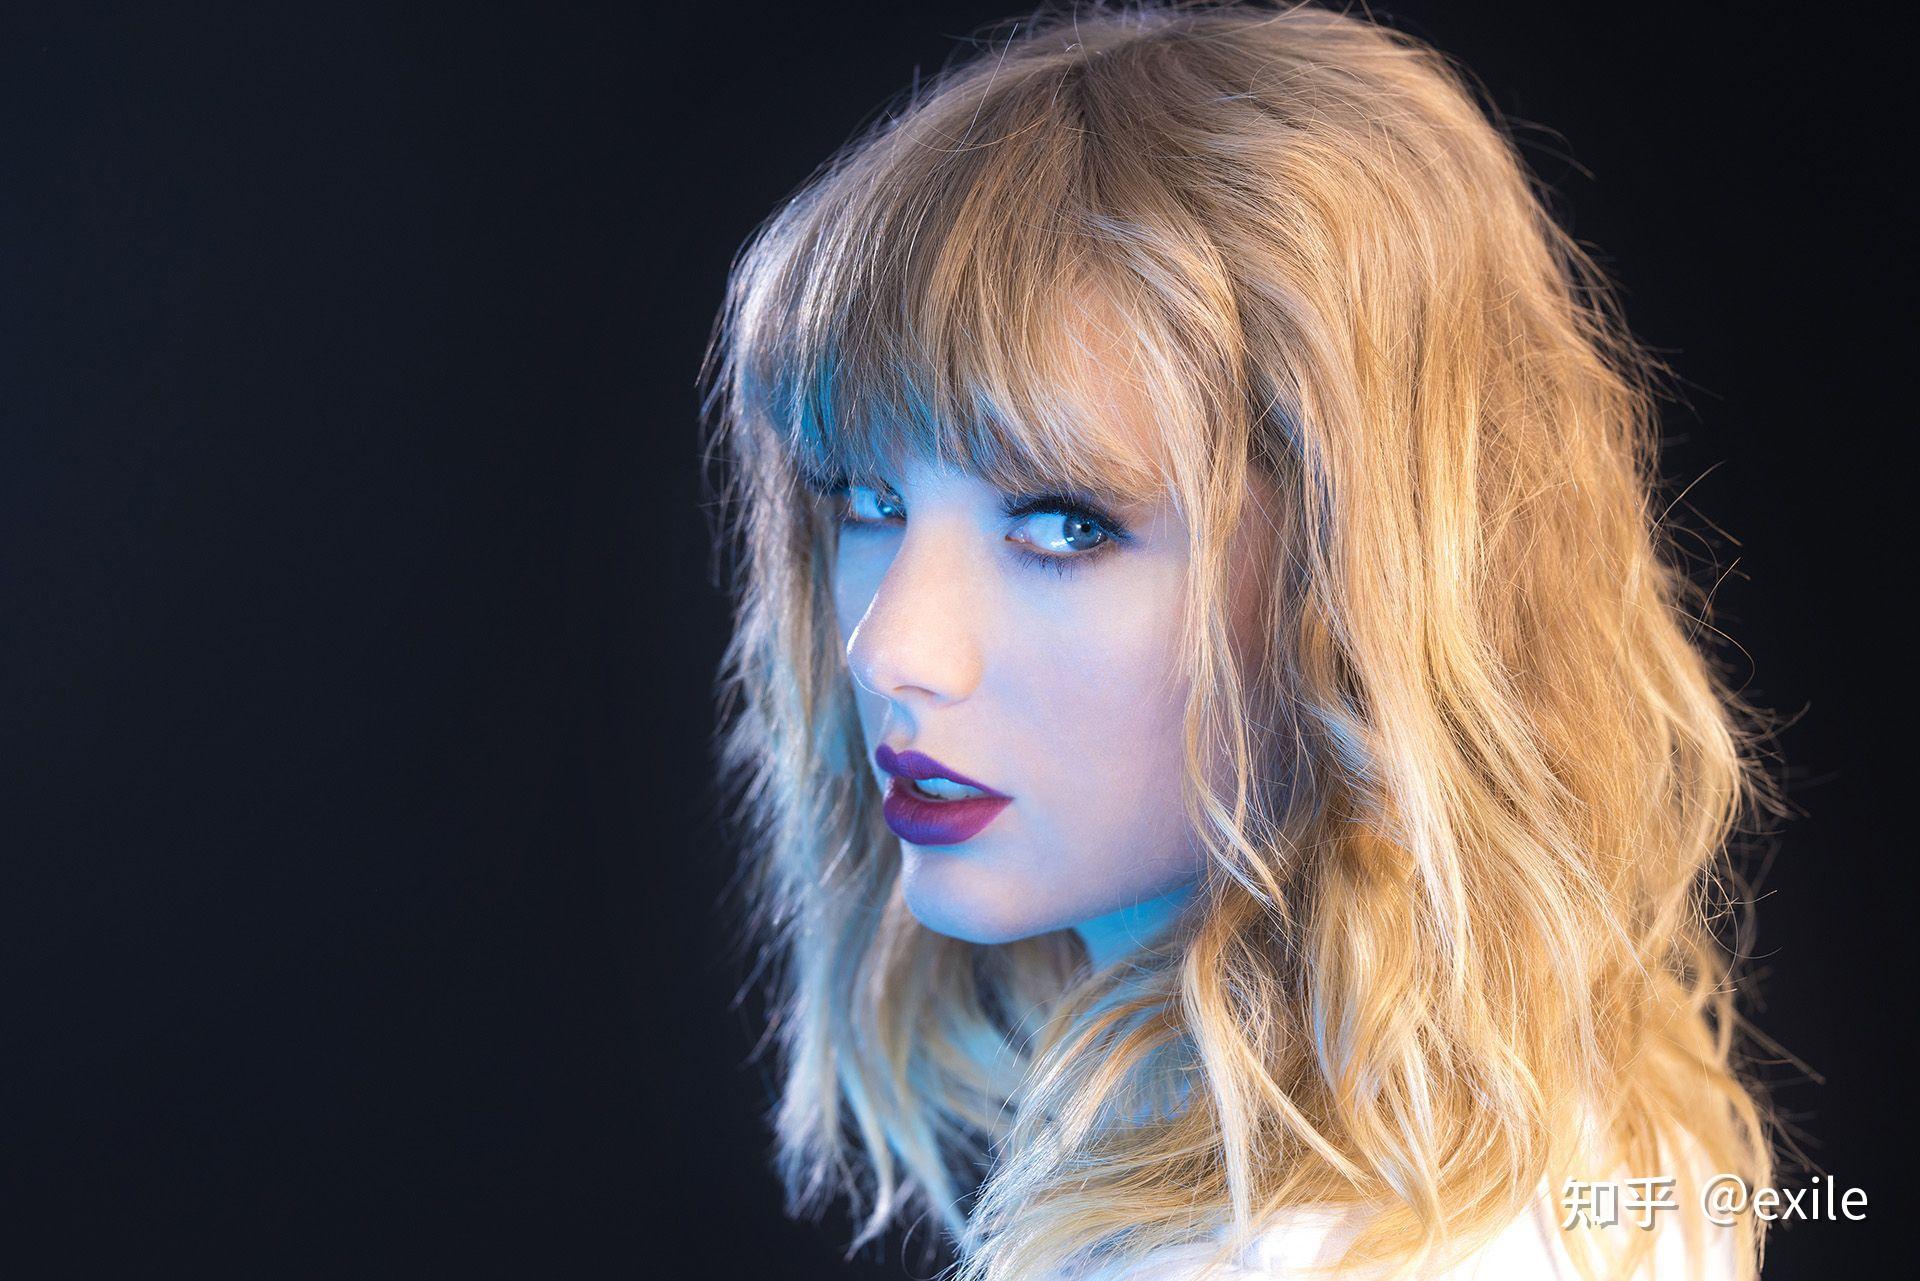 Taylor Swift Desktop Wallpapers - Top Free Taylor Swift Desktop ...